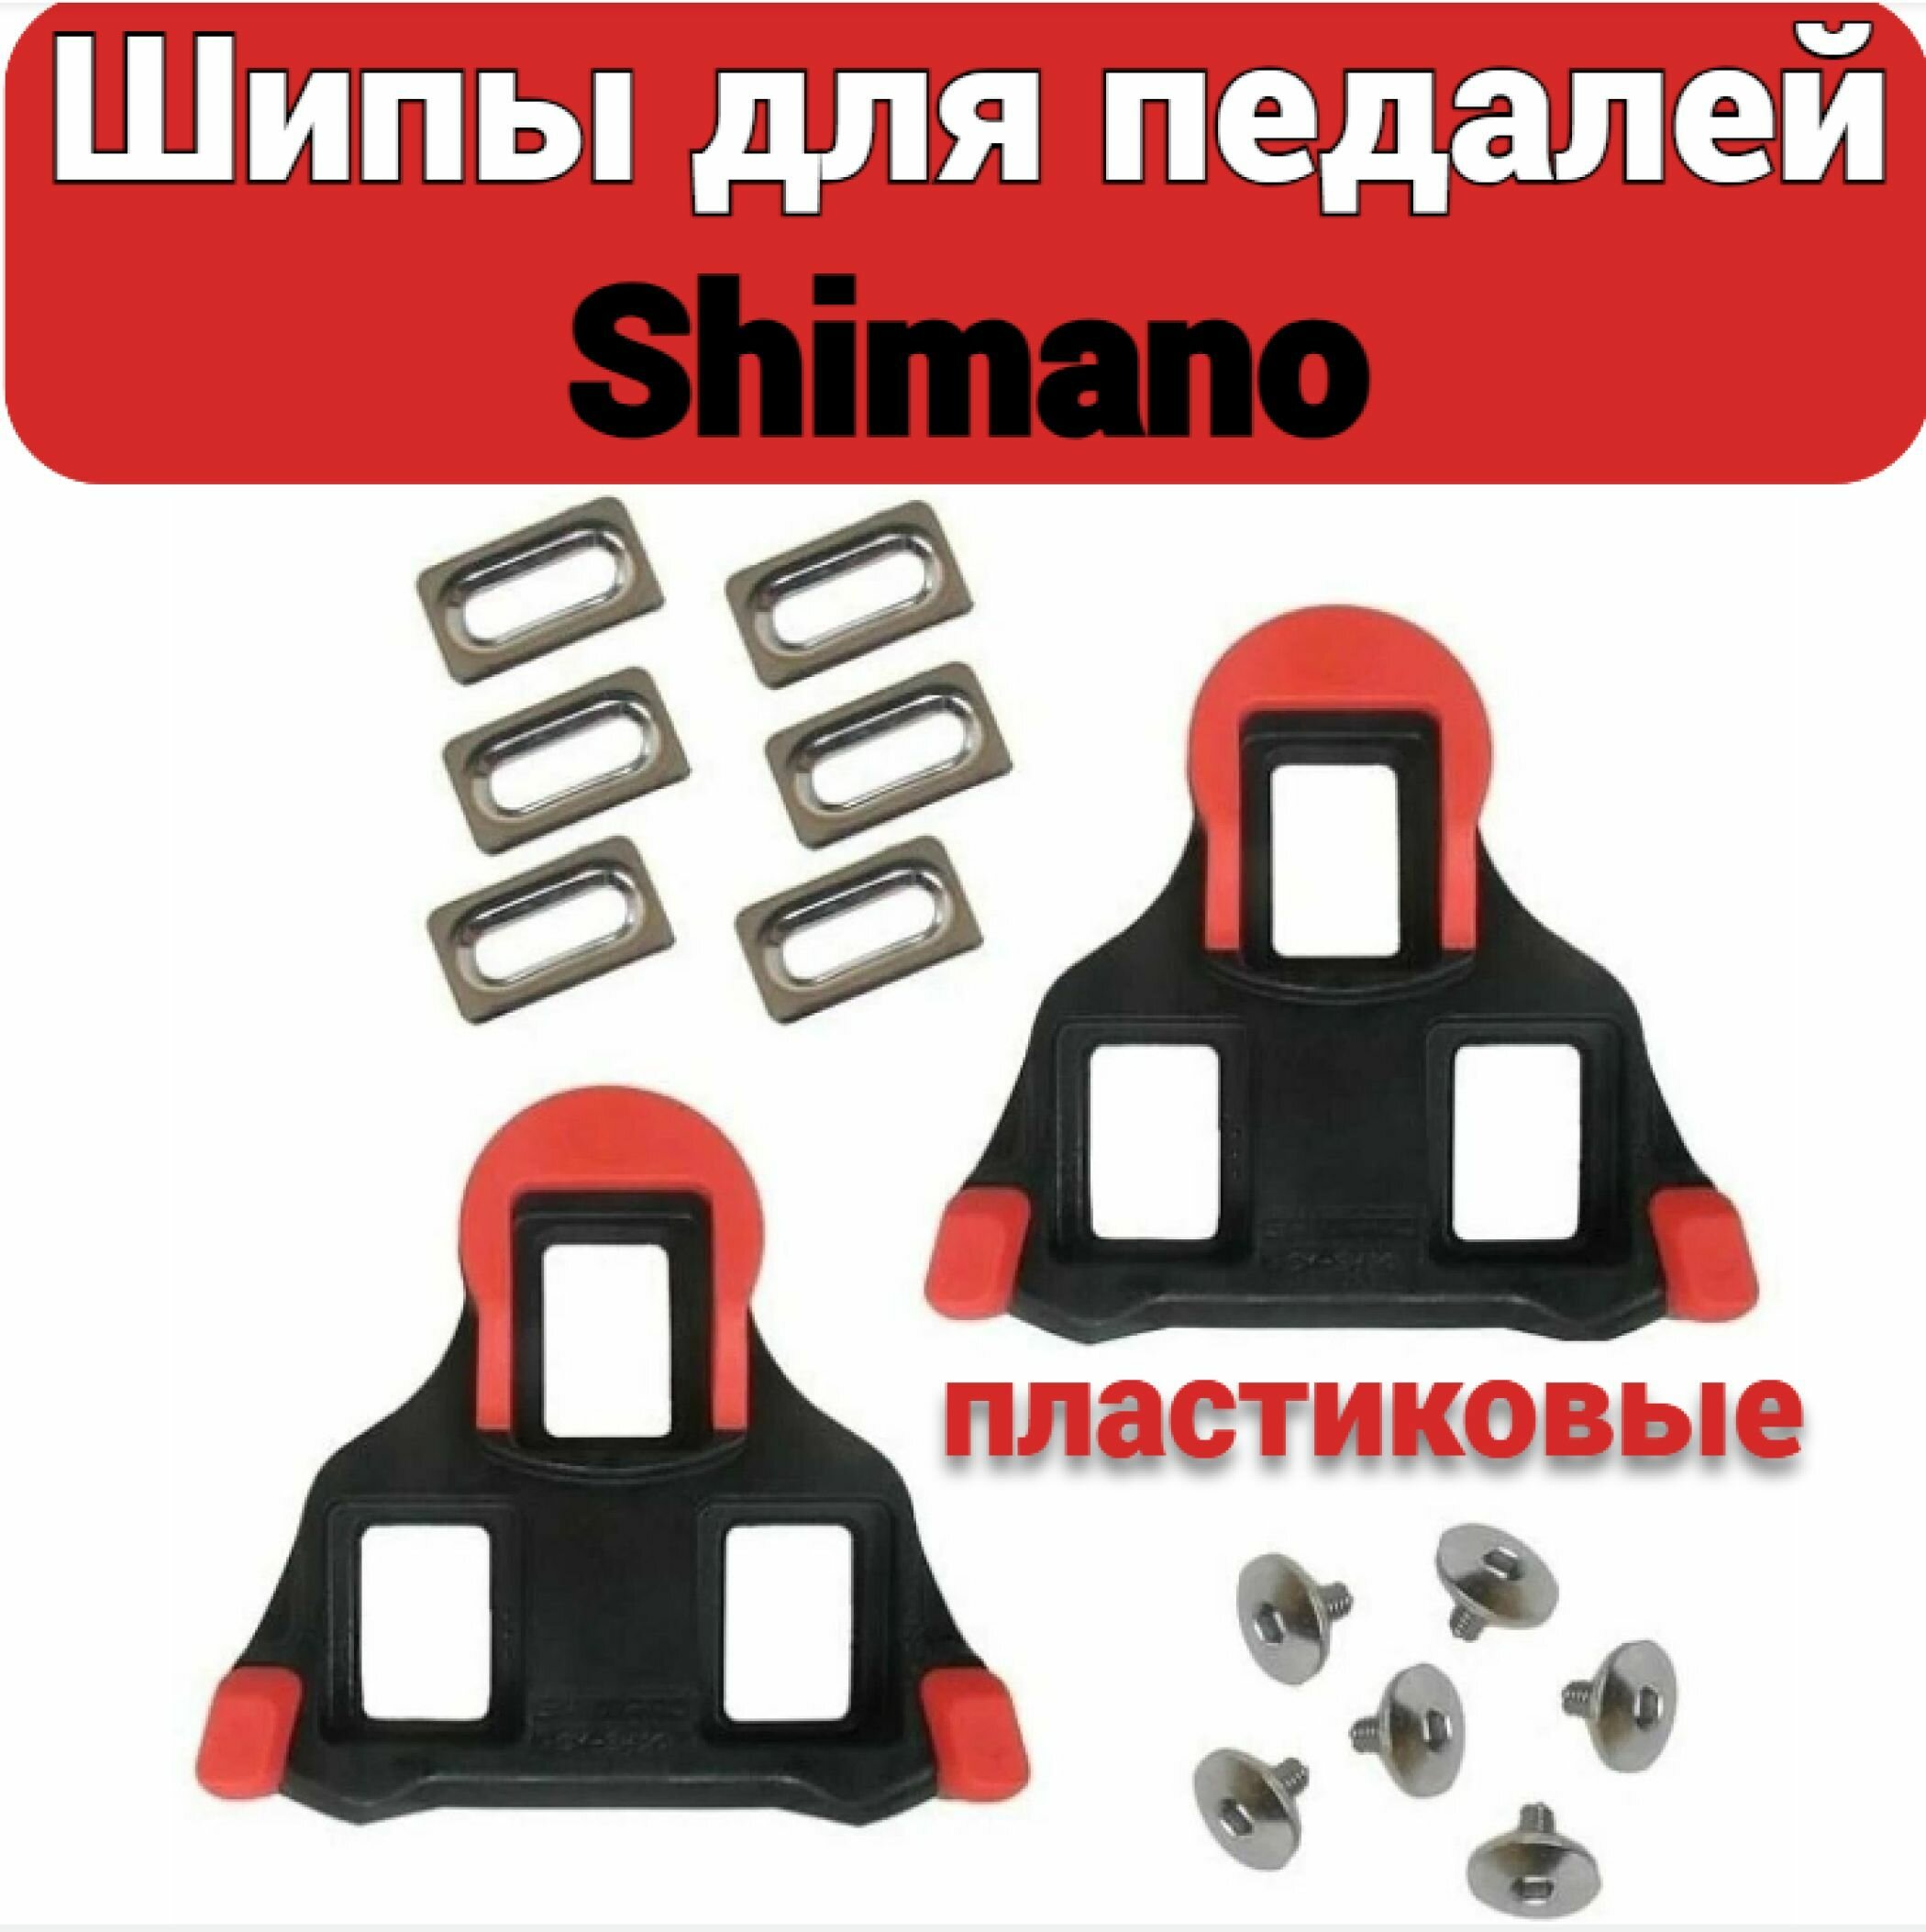 Шипы для контактных педалей Shimano, пластиковые, красные